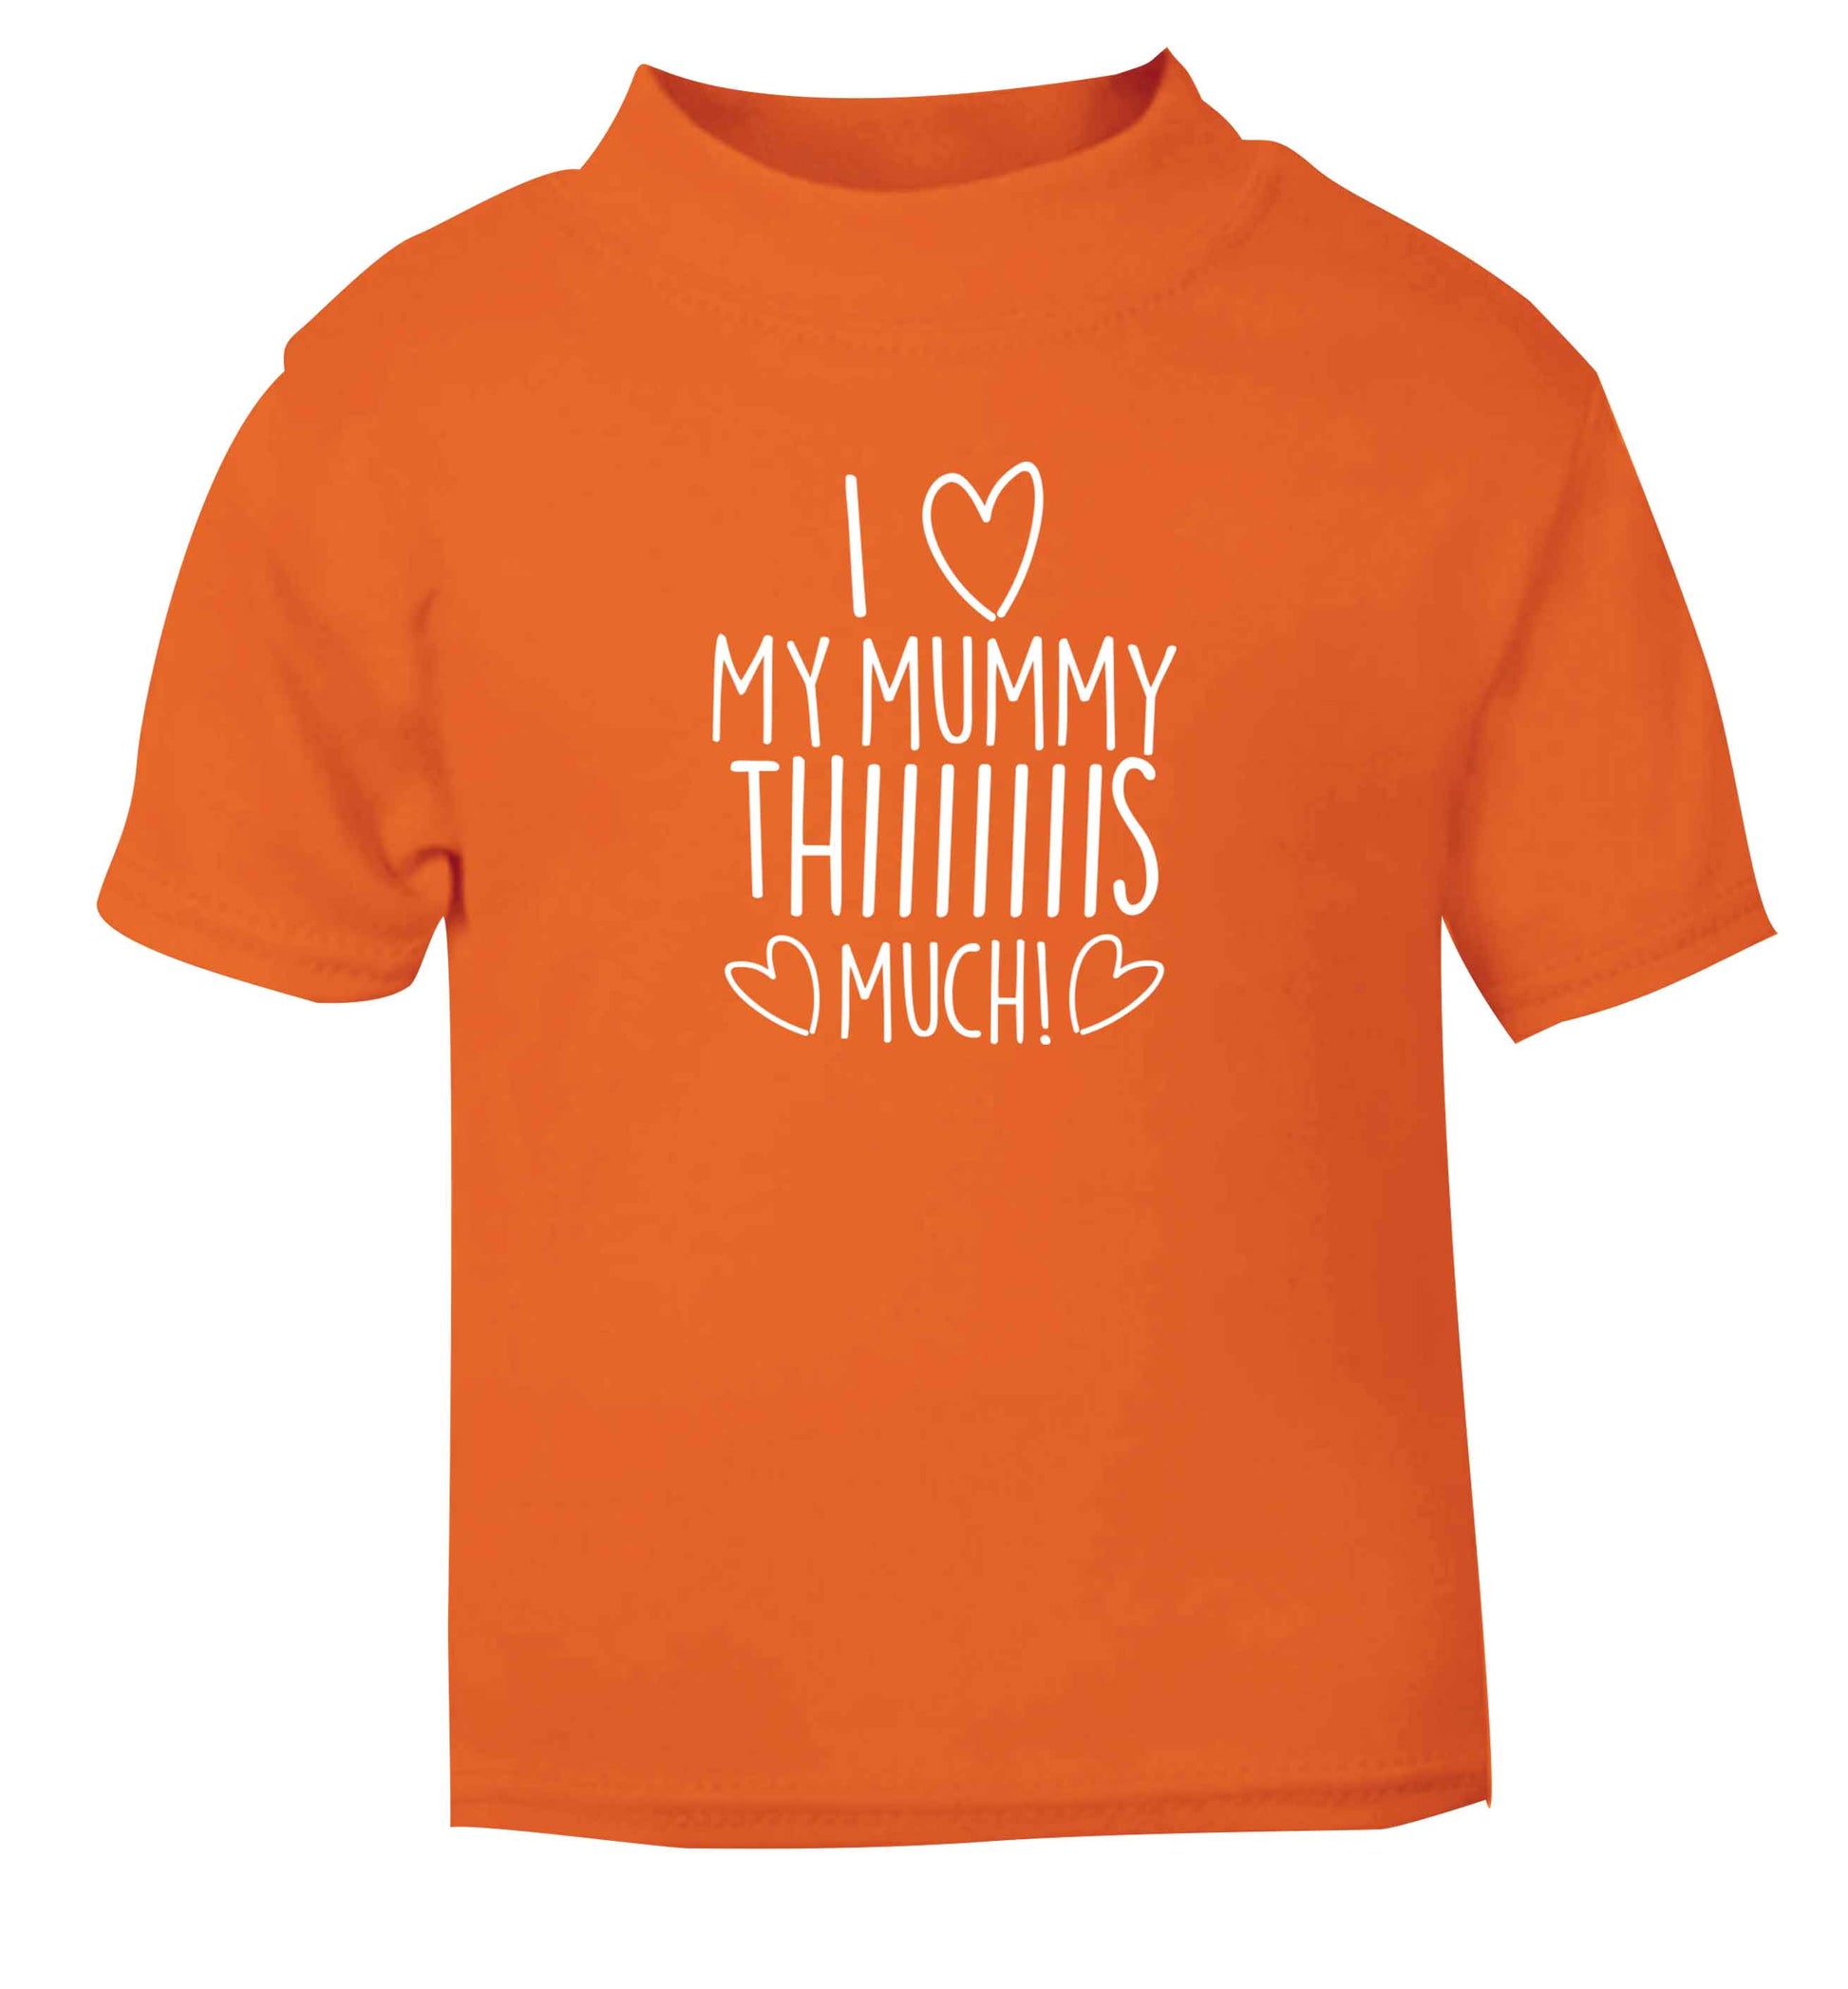 I love my mummy thiiiiis much! orange baby toddler Tshirt 2 Years